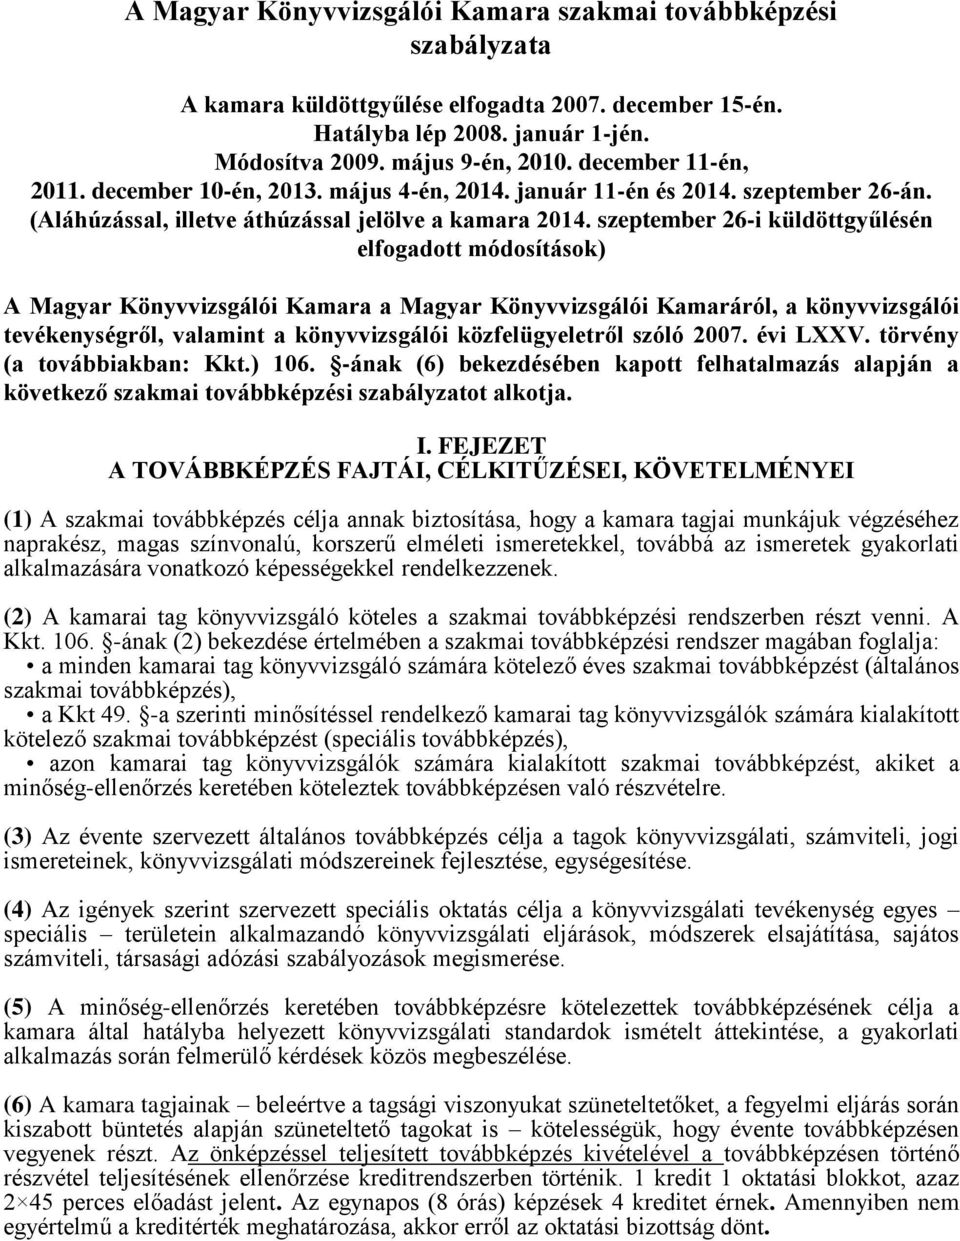 szeptember 26-i küldöttgyűlésén elfogadott módosítások) A Magyar Könyvvizsgálói Kamara a Magyar Könyvvizsgálói Kamaráról, a könyvvizsgálói tevékenységről, valamint a könyvvizsgálói közfelügyeletről